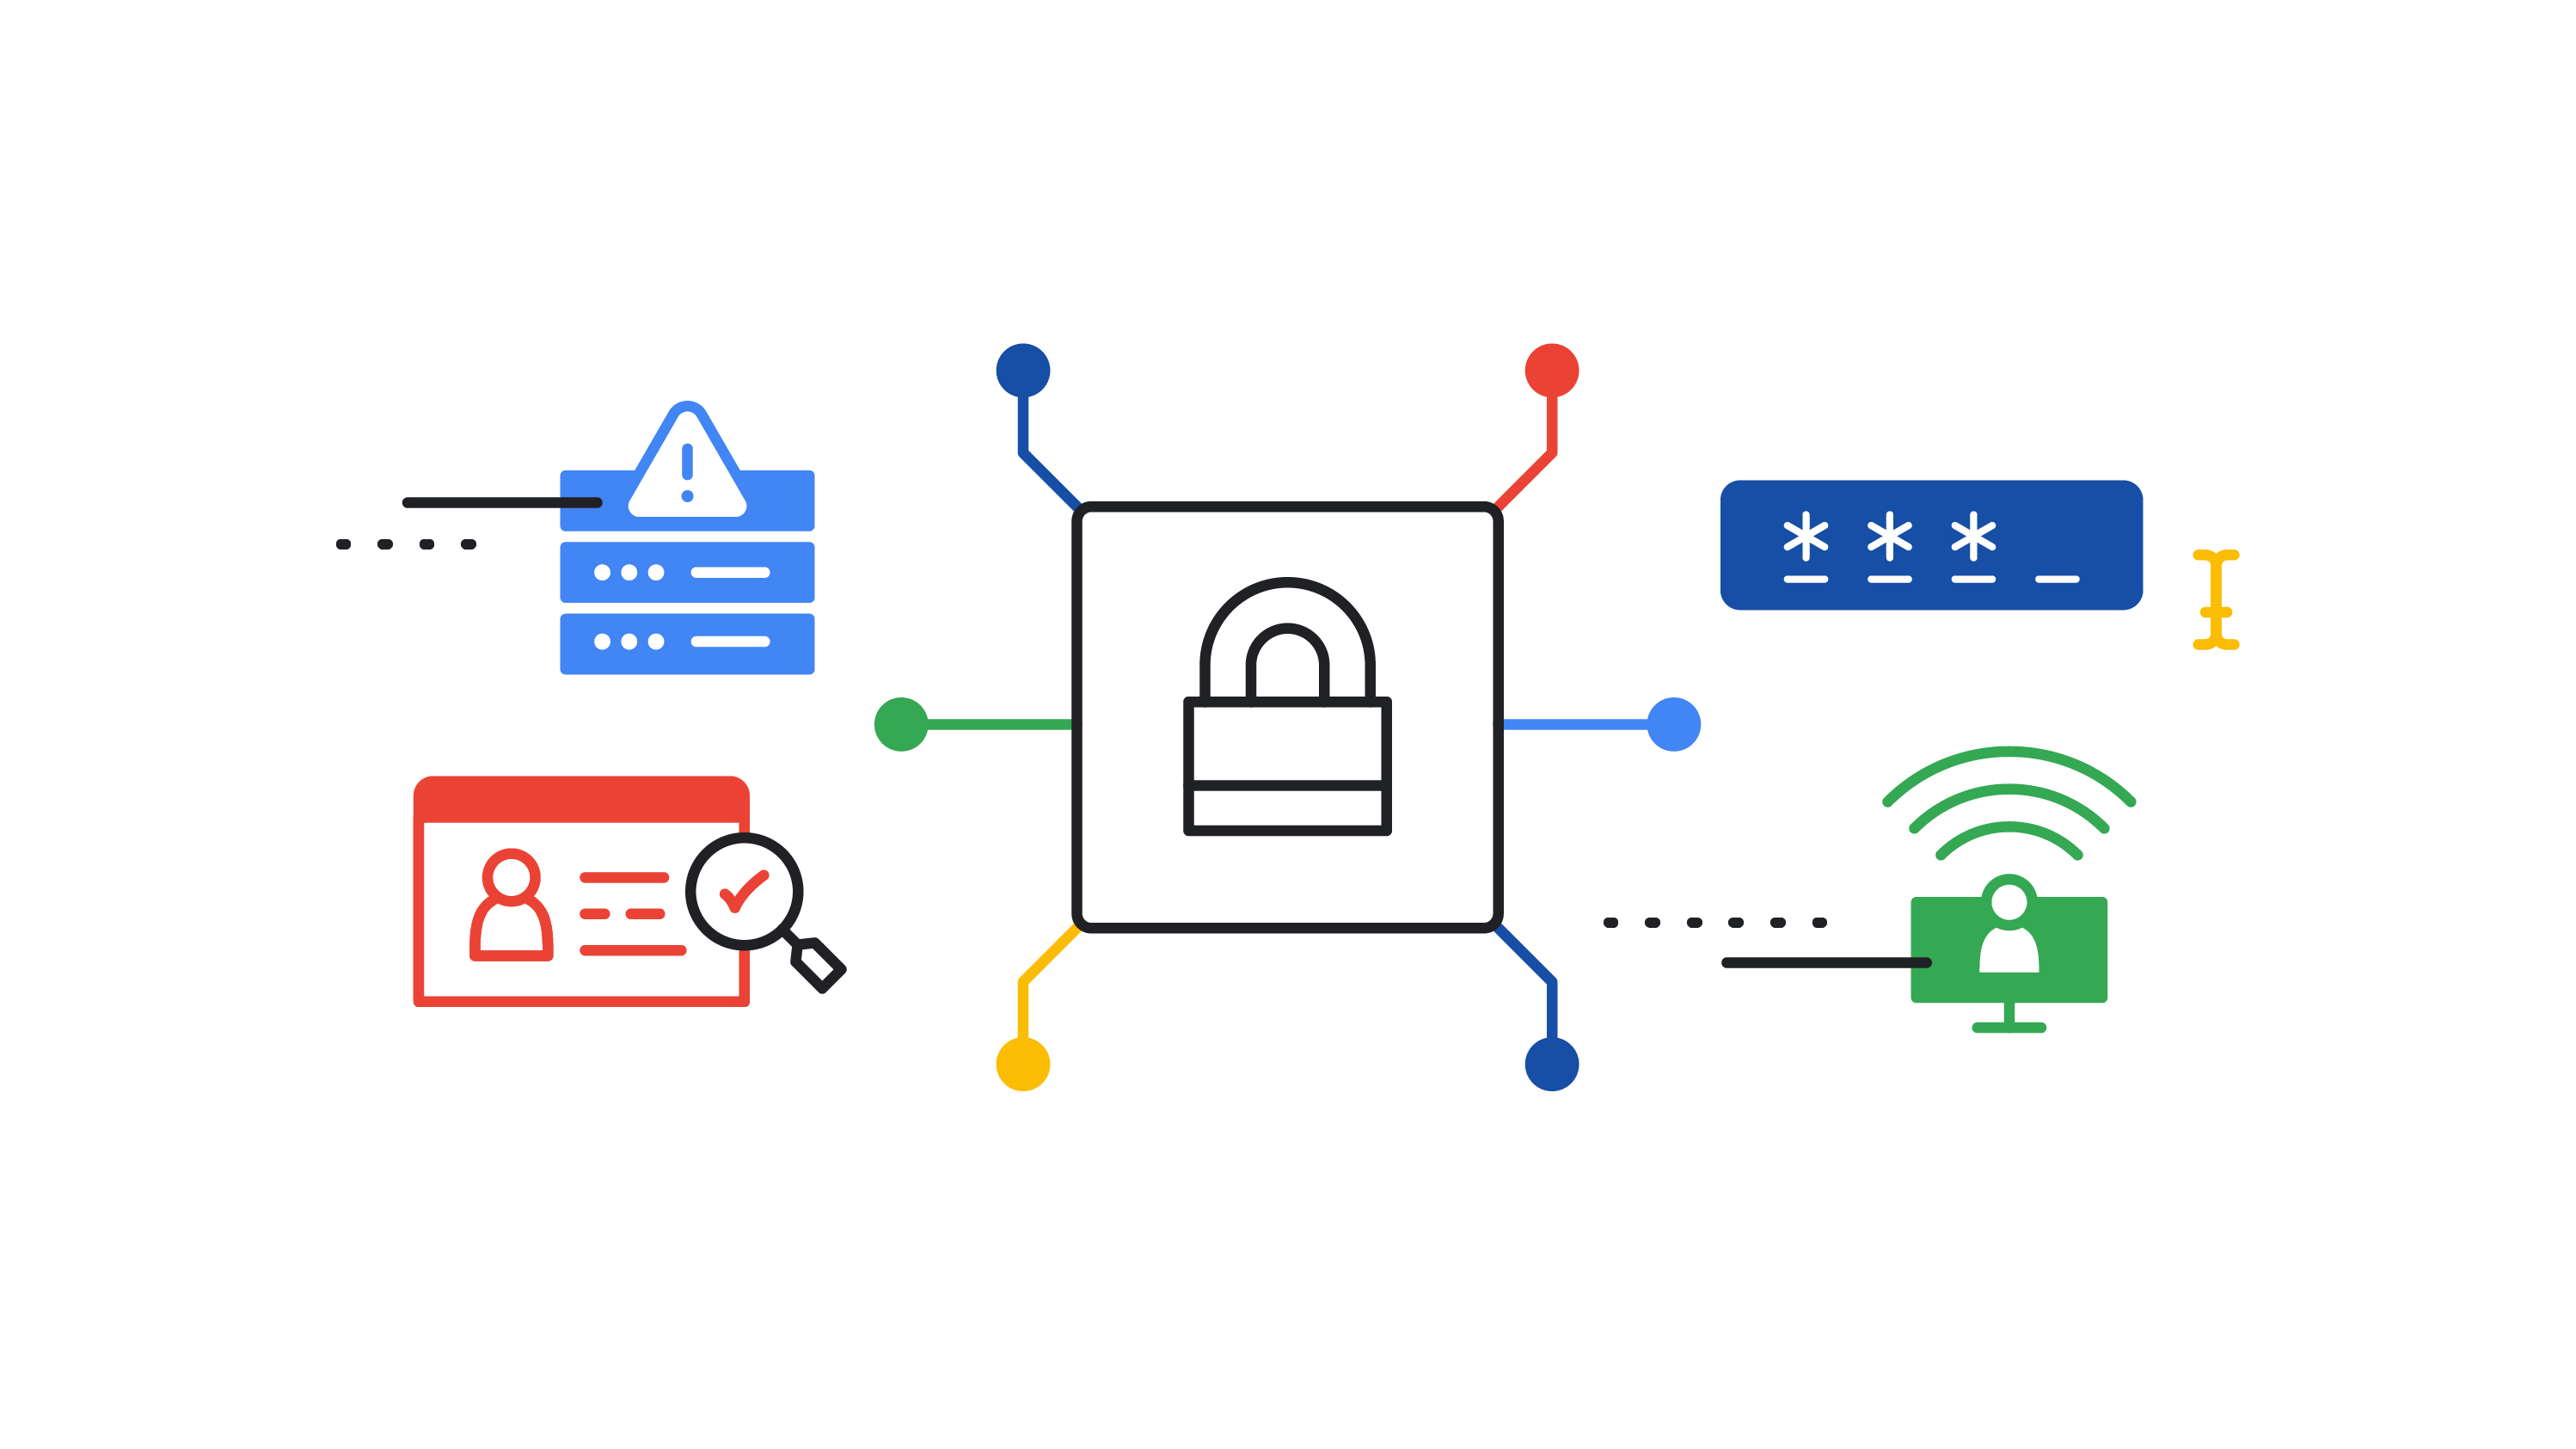 Ilustrácia na tému kybernetickej bezpečnosti obsahujúca visiaci zámok, online heslo a výstražné znamenie.